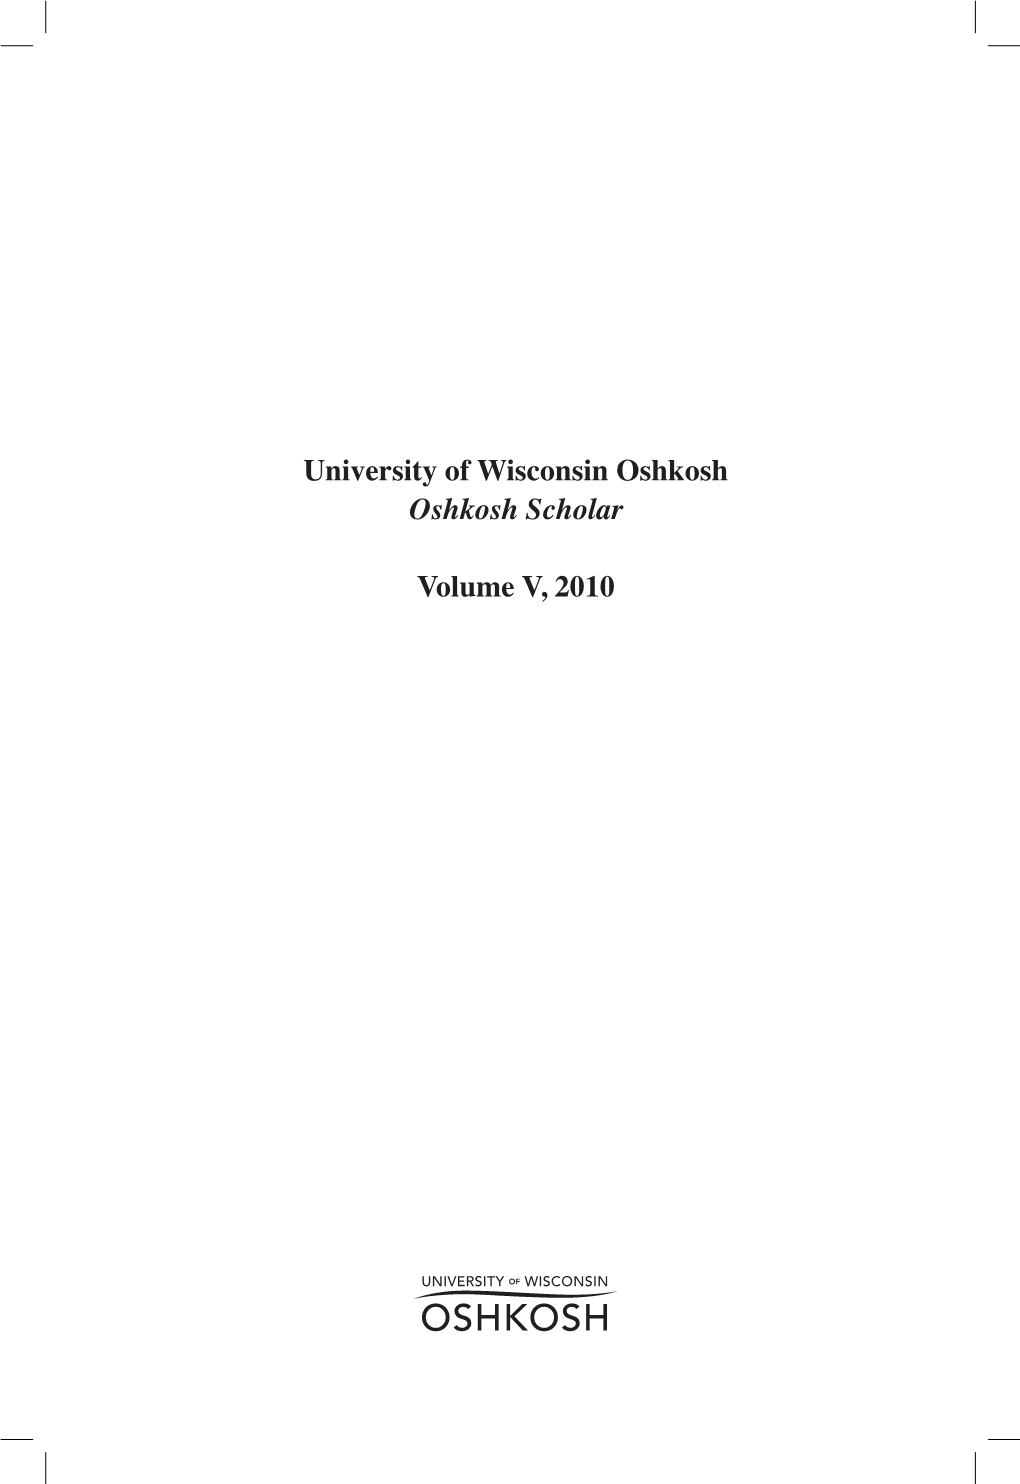 University of Wisconsin Oshkosh Oshkosh Scholar Volume V, 2010